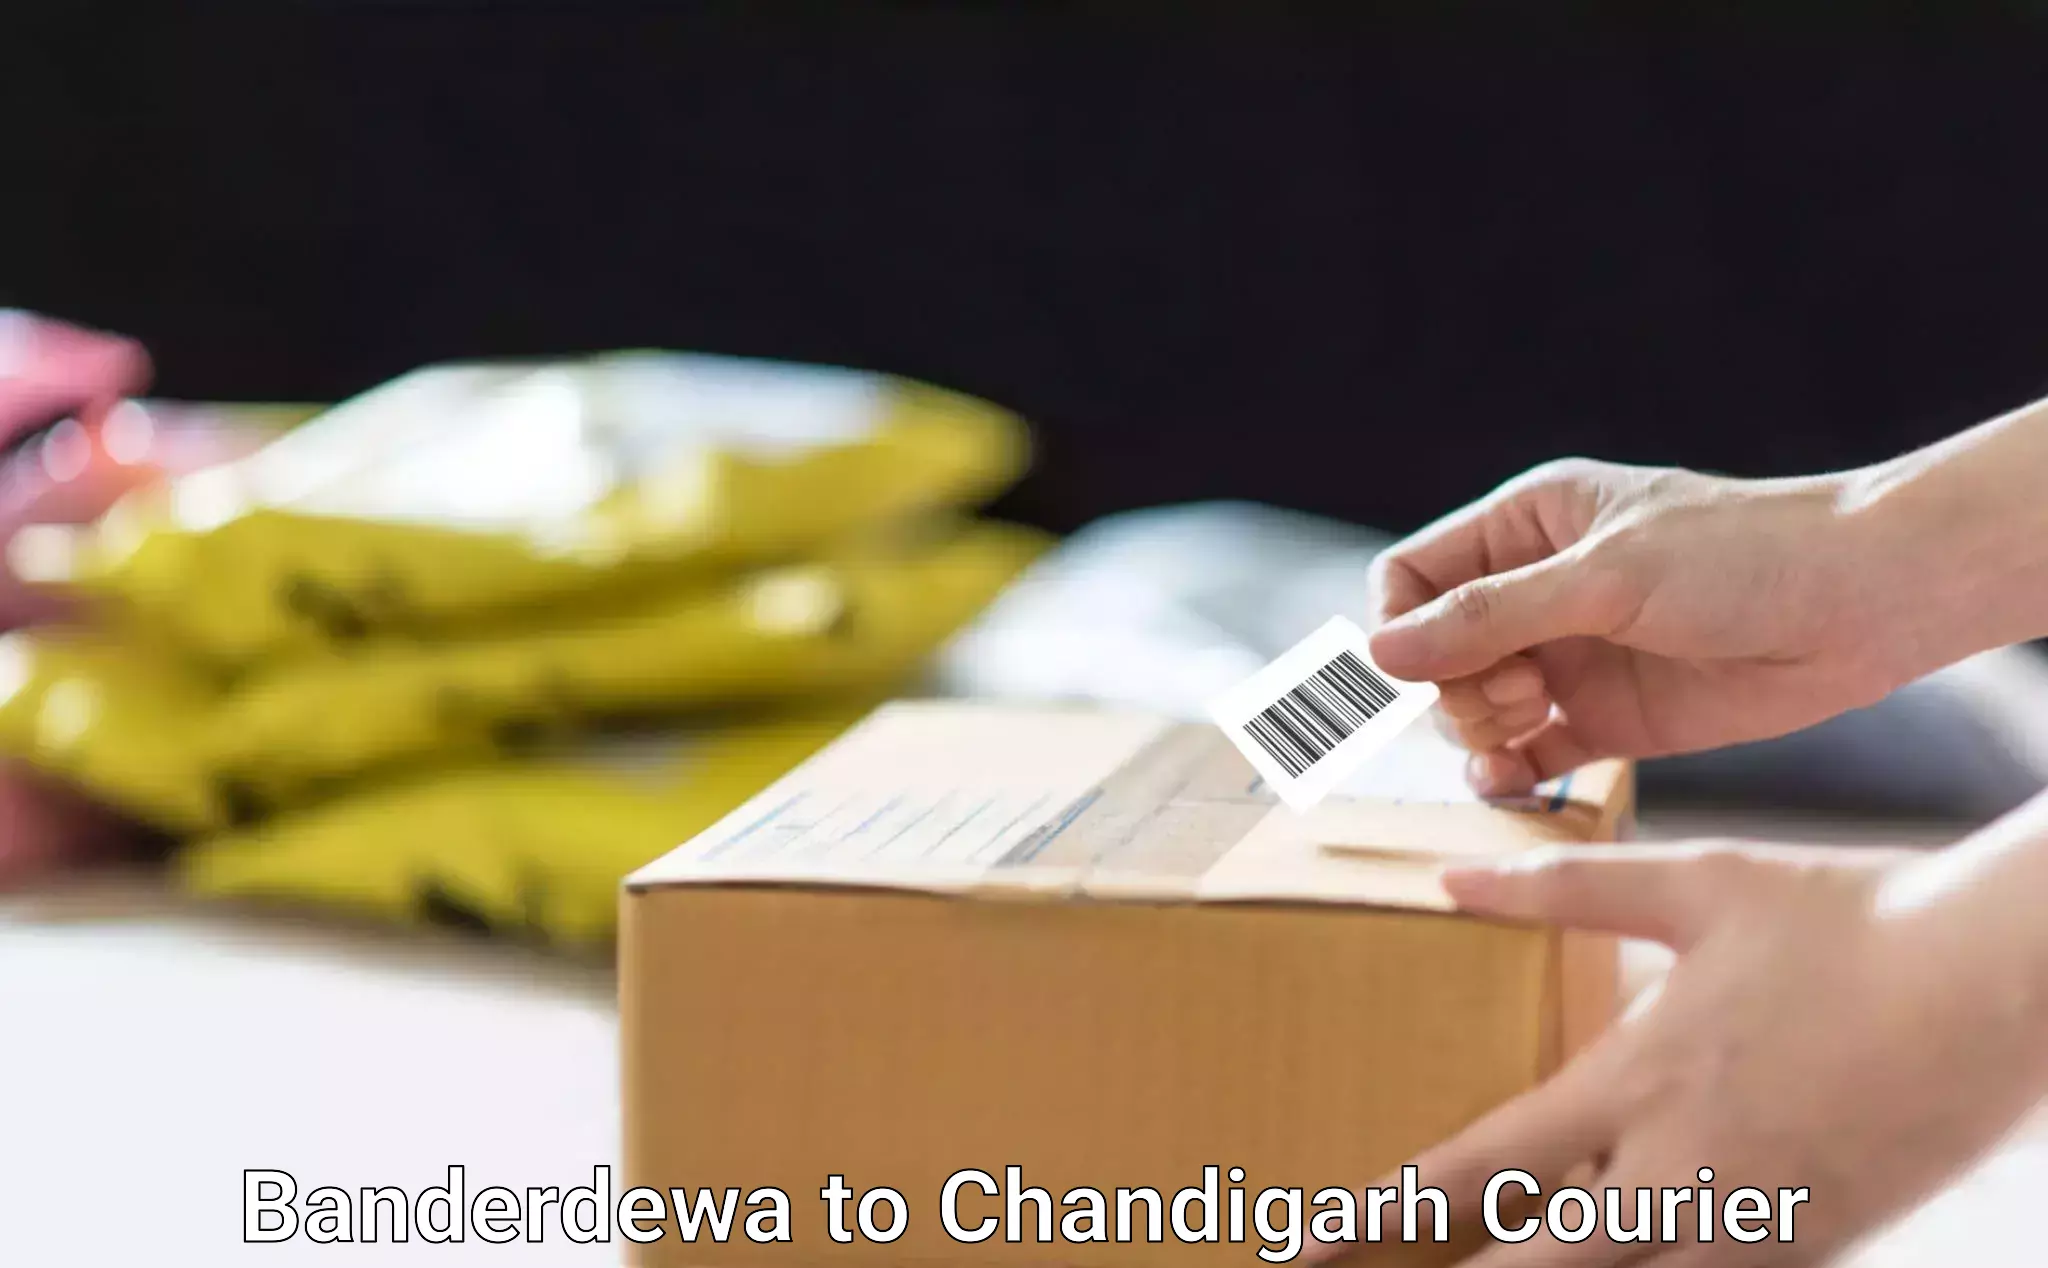 Smart parcel tracking Banderdewa to Chandigarh